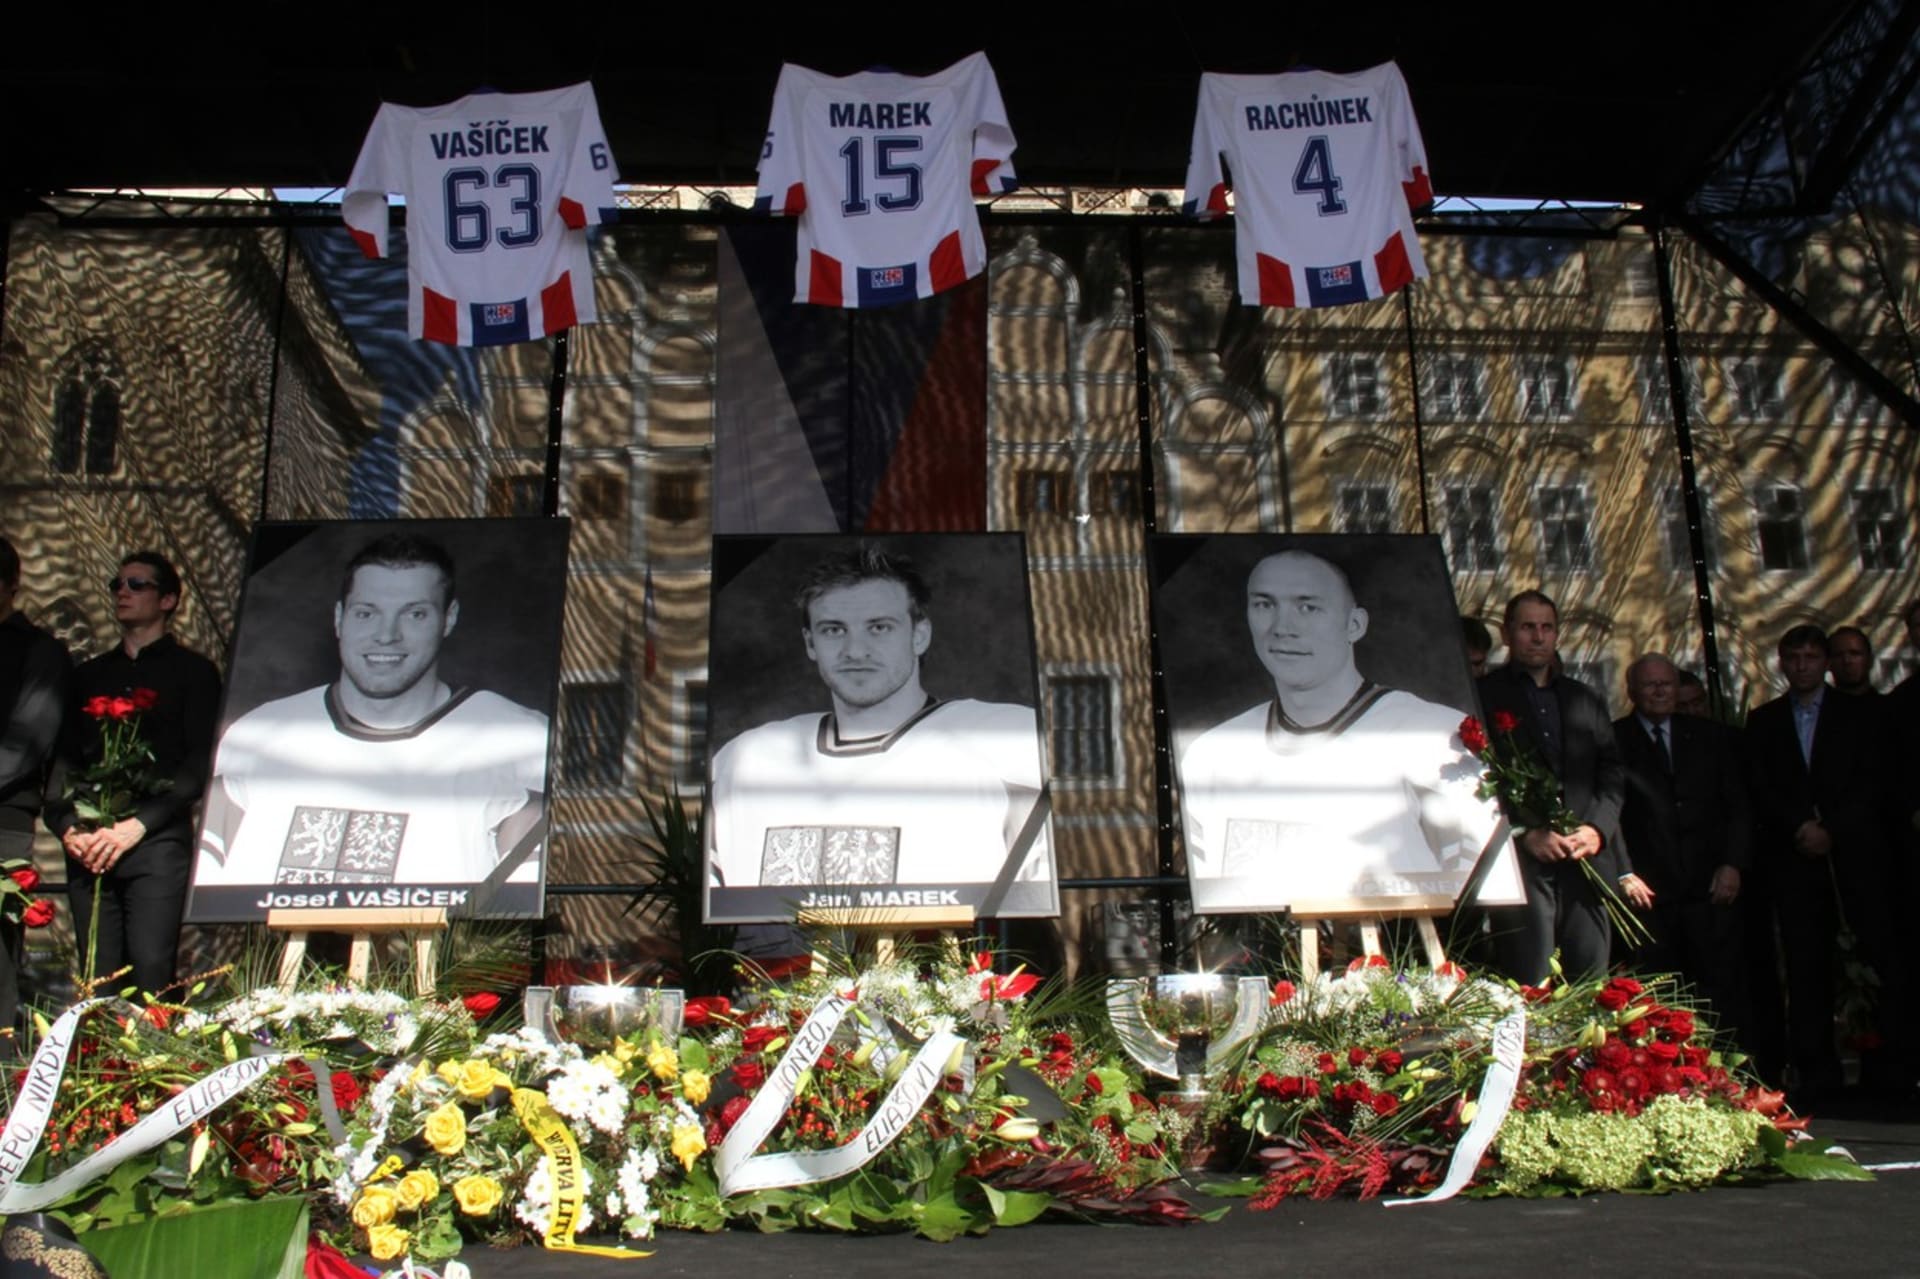 Vzpomínka na české hokejisty, kteří při tragédii zemřeli. Josefa Vašíčka, Jana Marka a Karla Rachůnka.